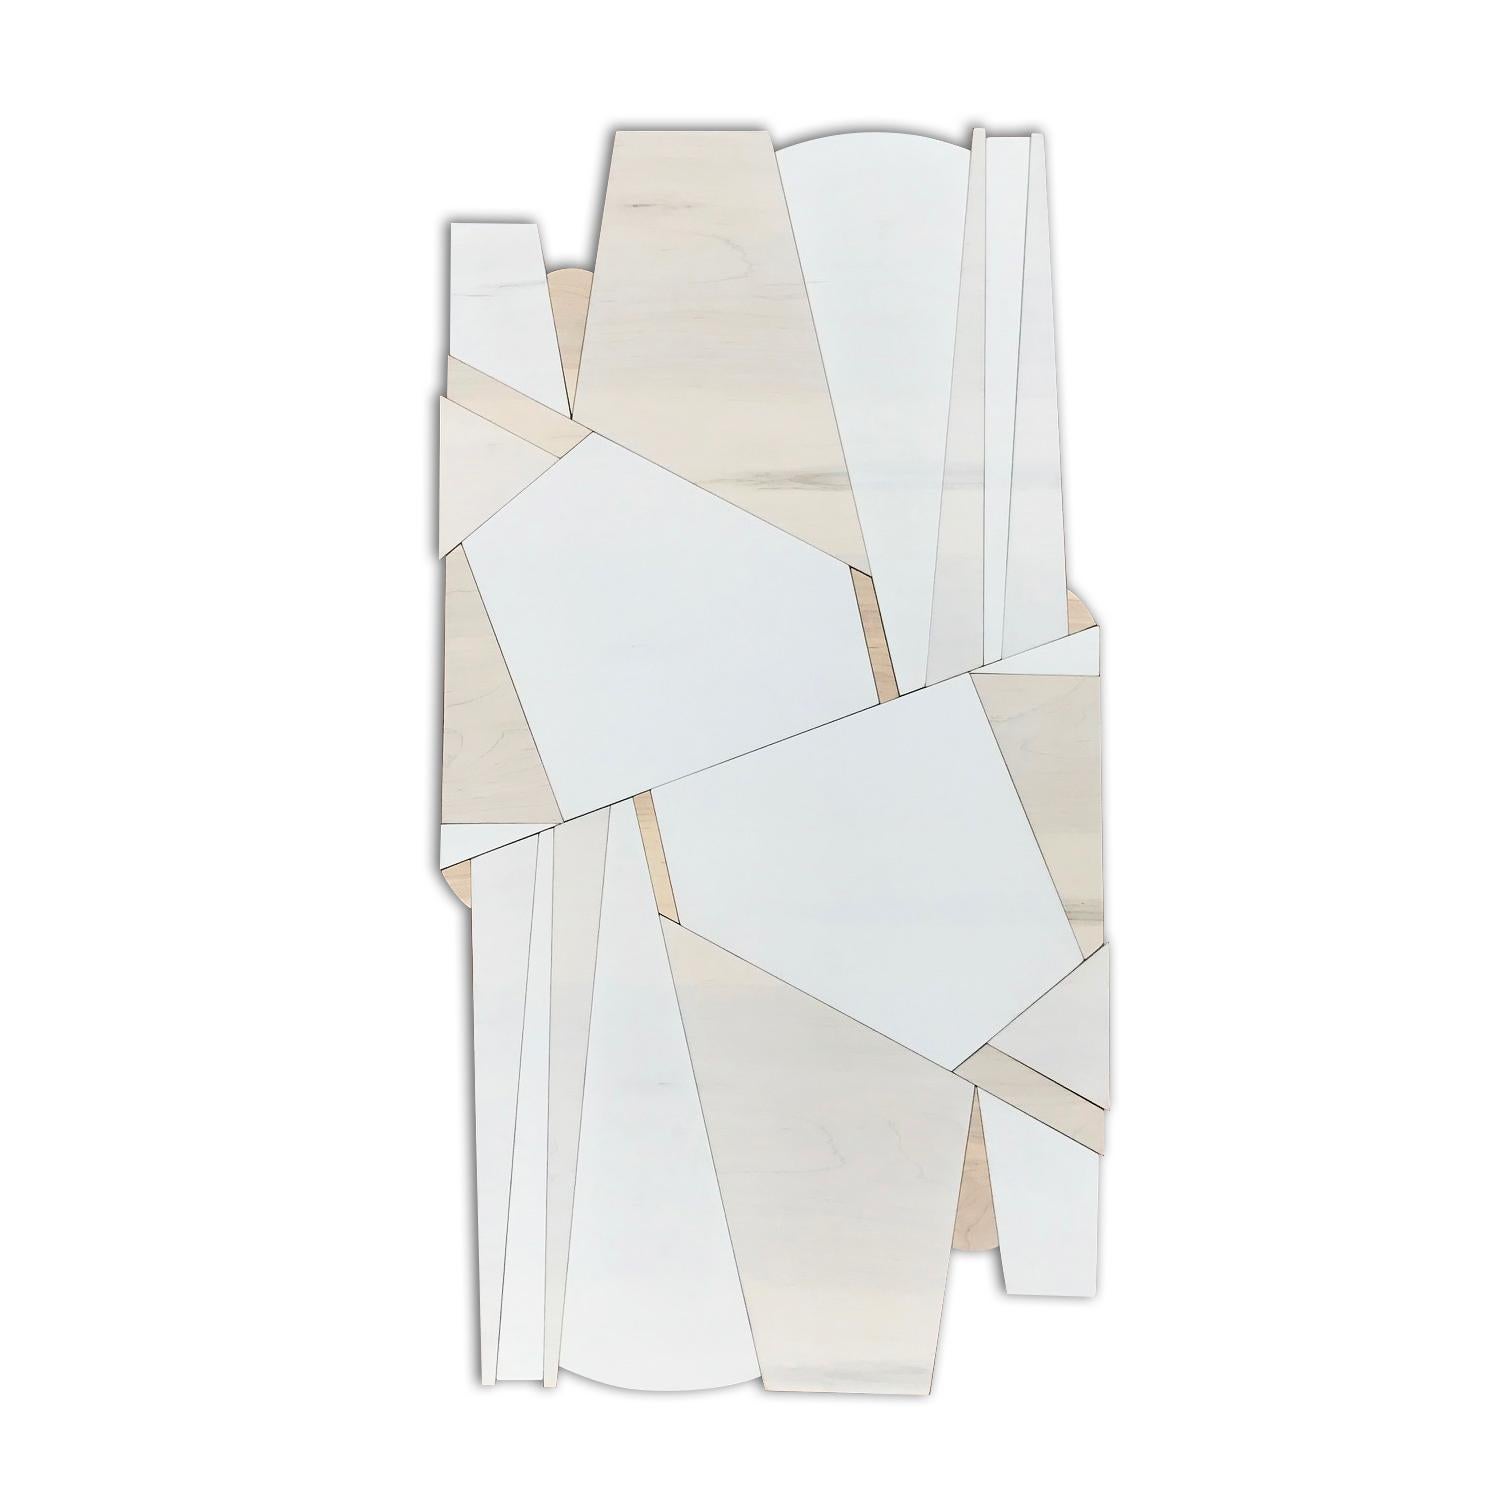 Scott Troxel Abstract Sculpture - Drifter (wood wall sculpture minimal geometric modern natural tan vanilla cream